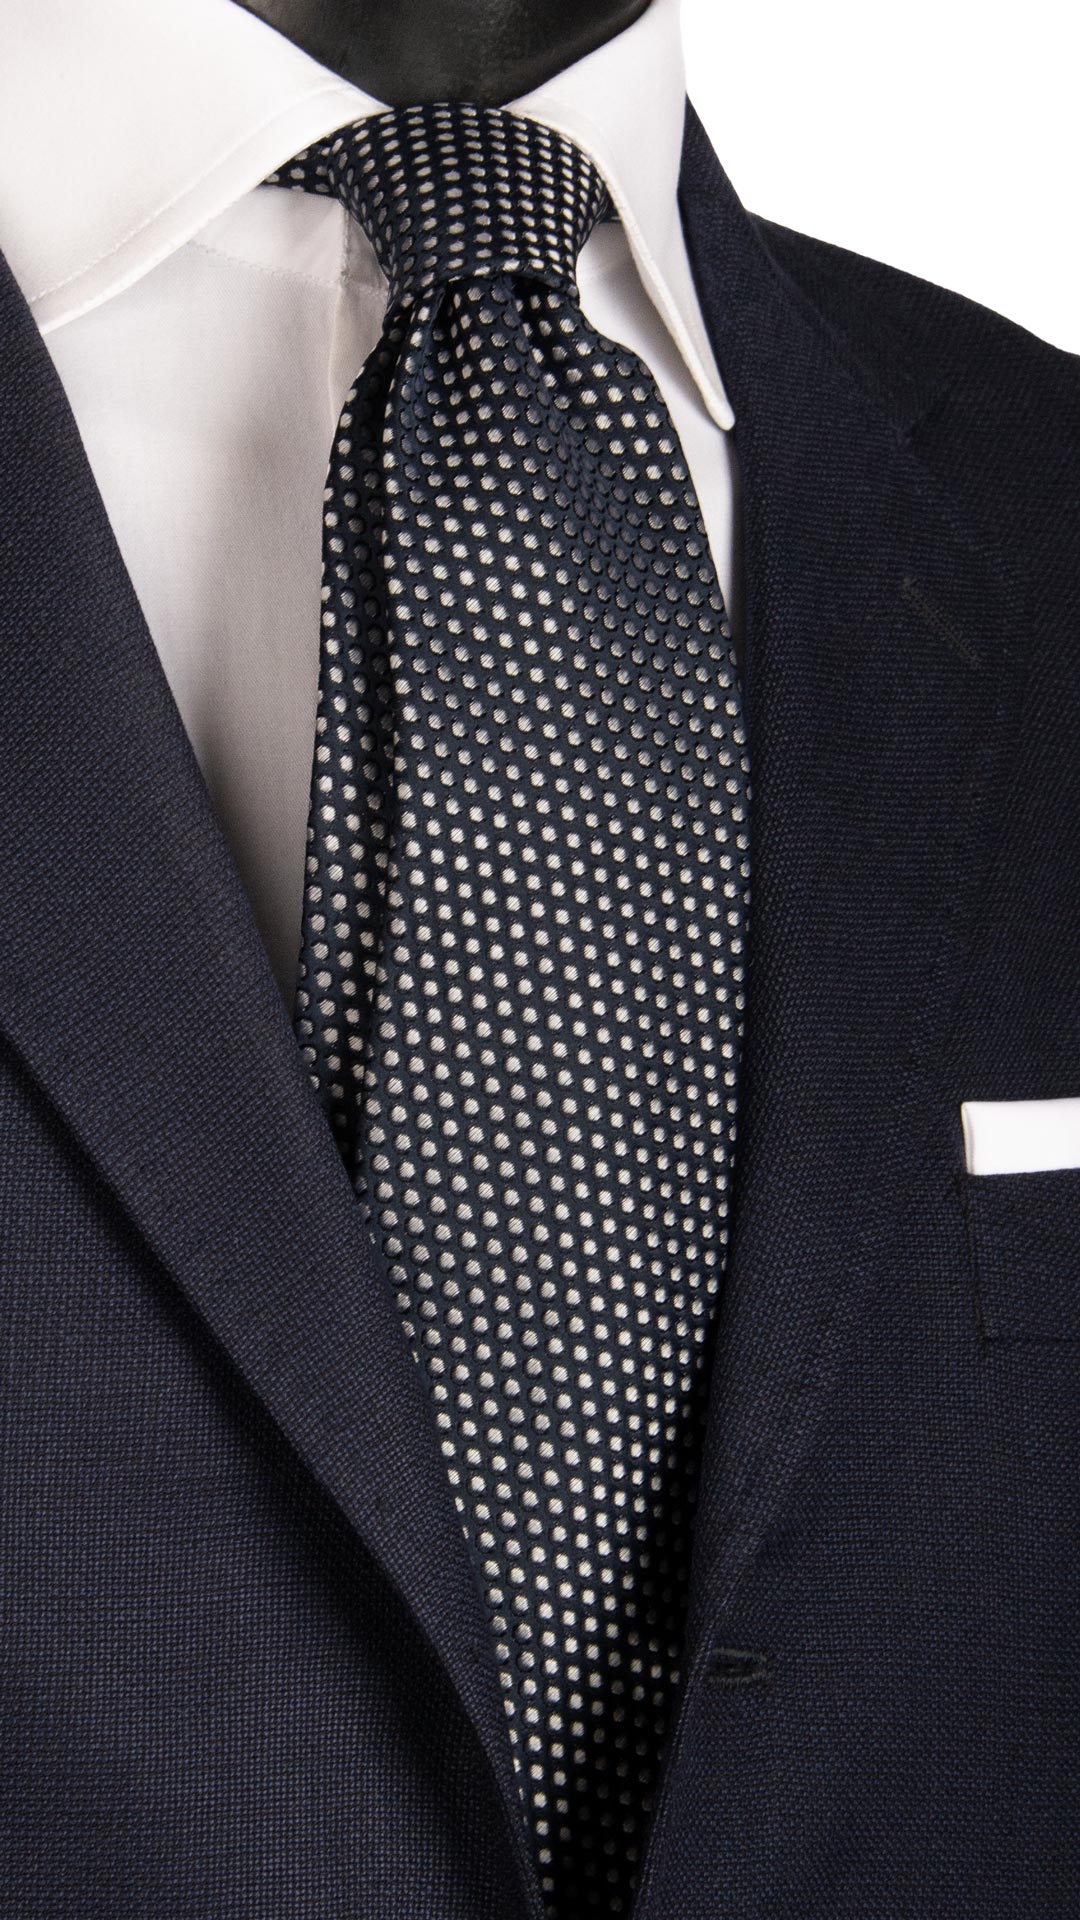 Cravatta da Cerimonia di Seta Blu a Pois Grigio Argento CY6664 Made in Italy Graffeo Cravatte